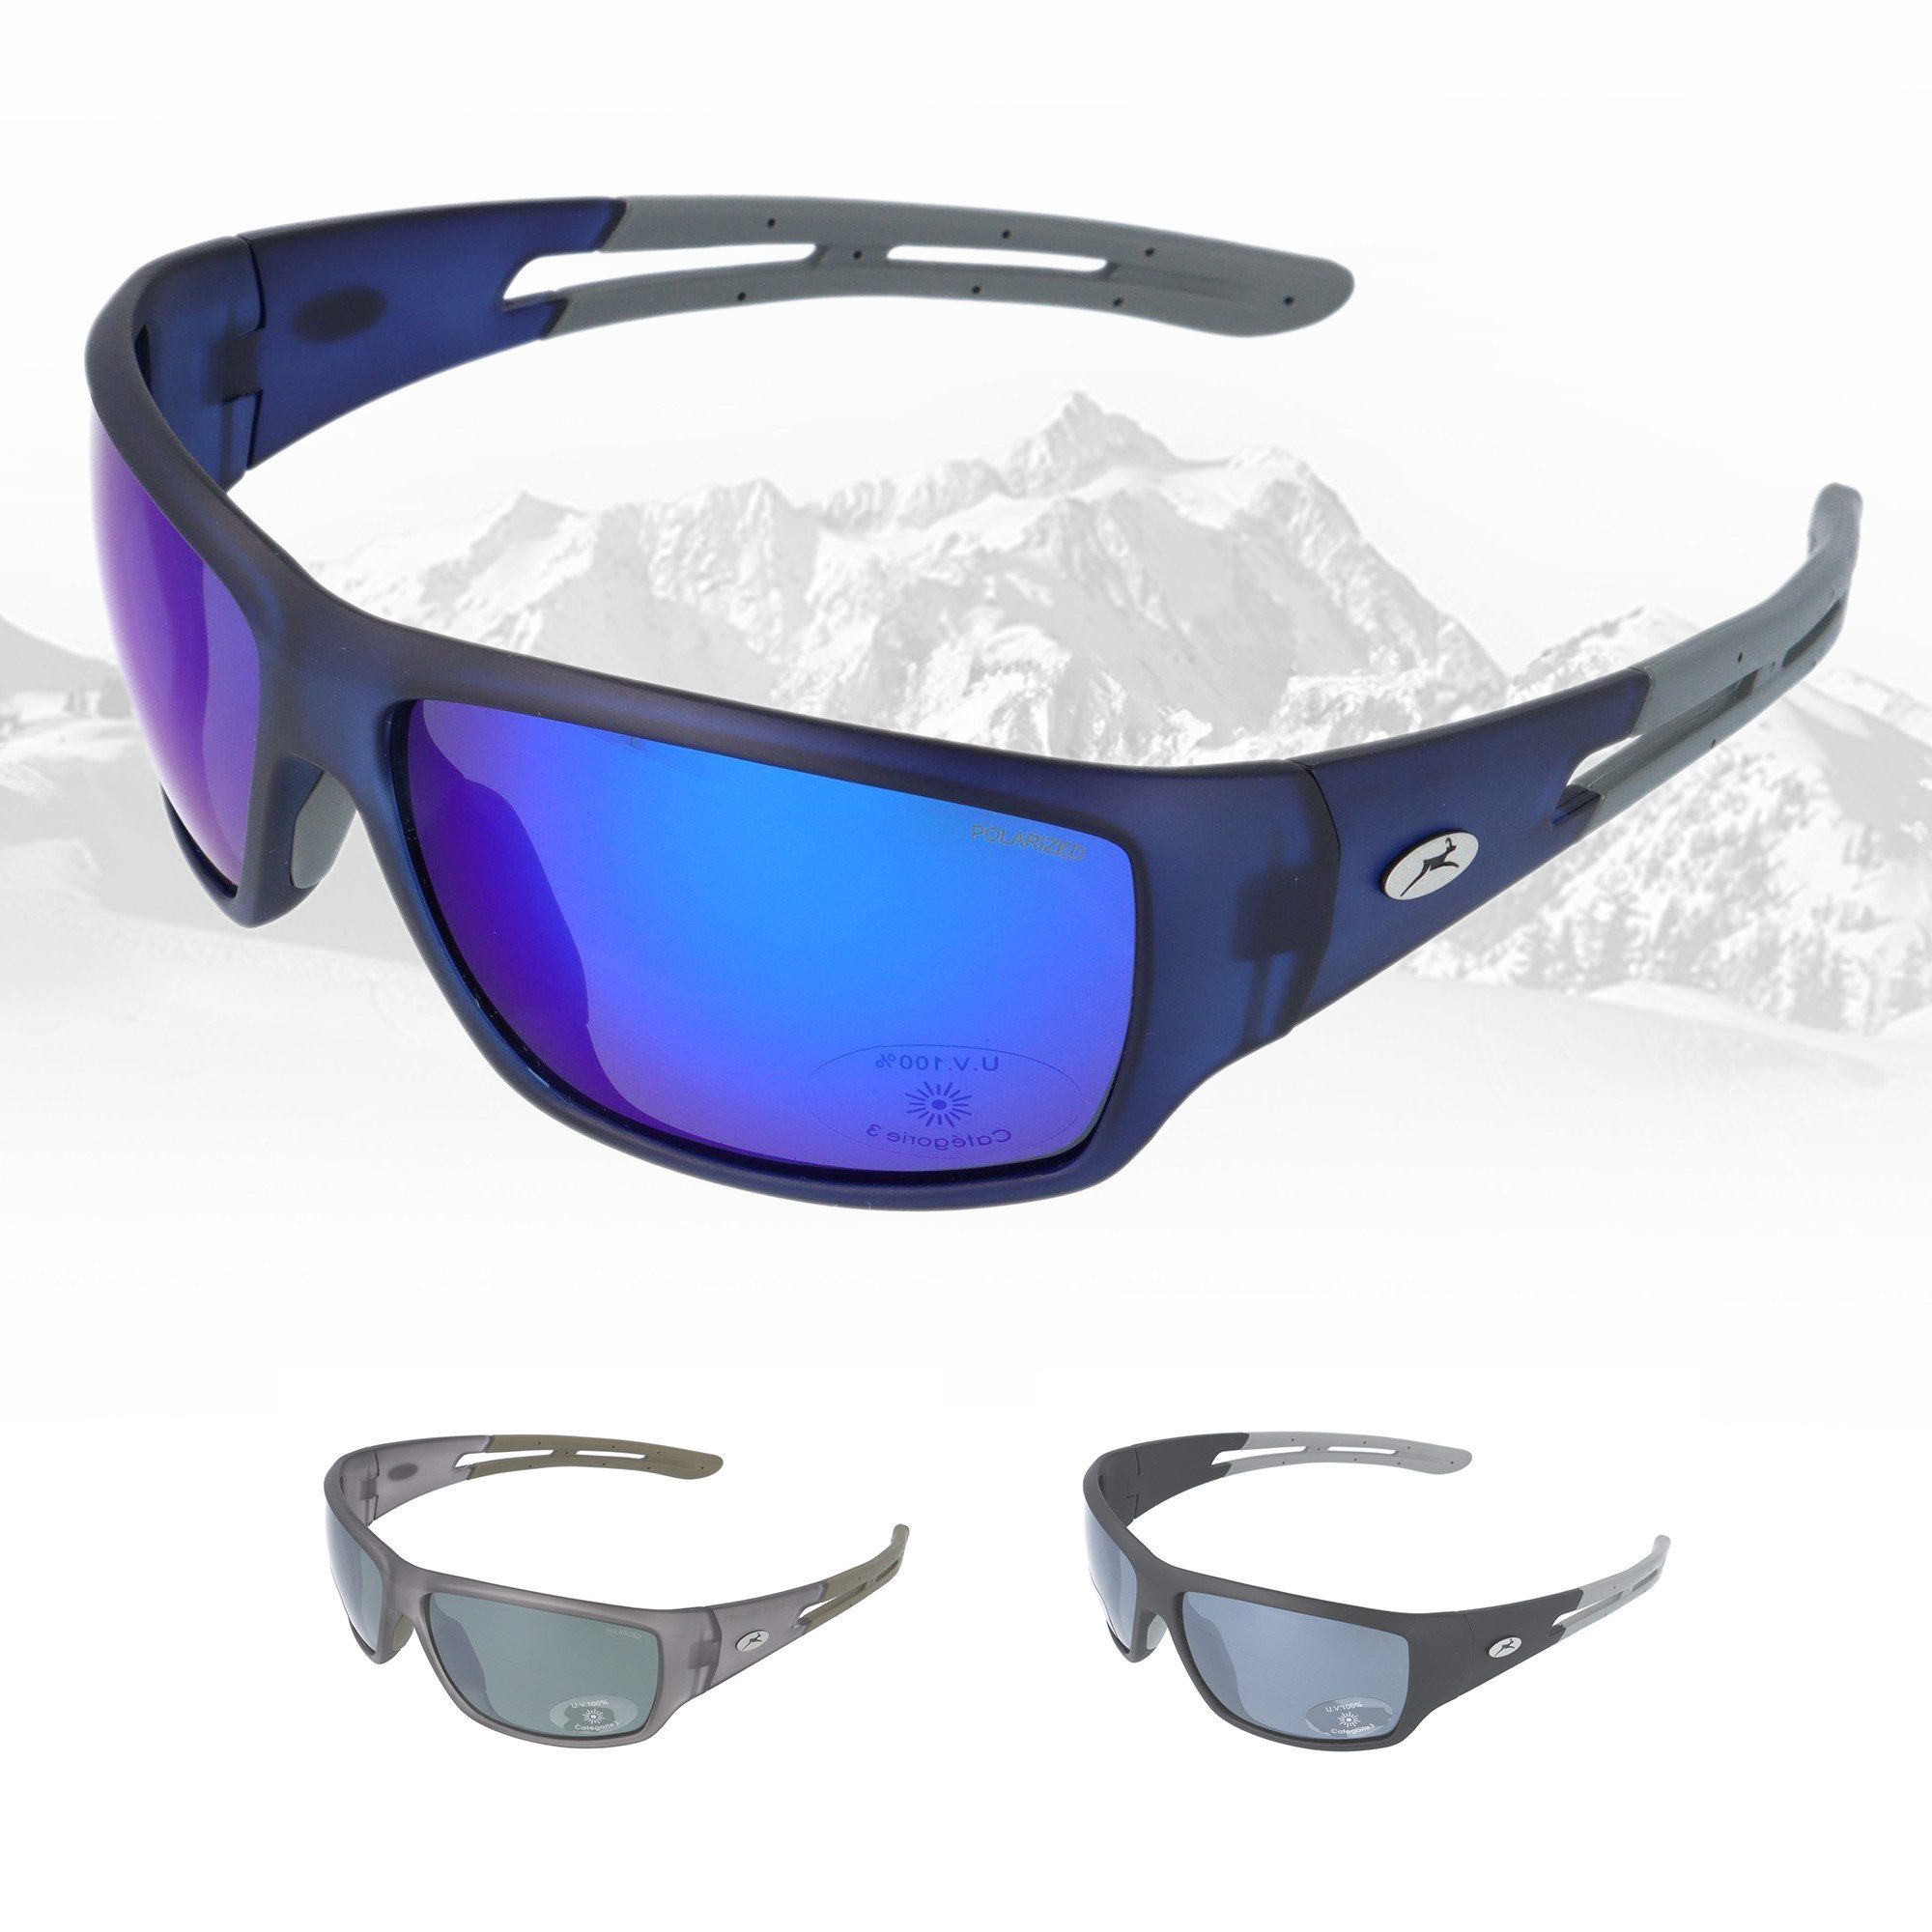 Gamswild Skibrille UV400 Sonnenbrille Fahrradbrille breite Bügel/winddicht Damen, Herren Modell WS7127 in schwarz, grau, blau